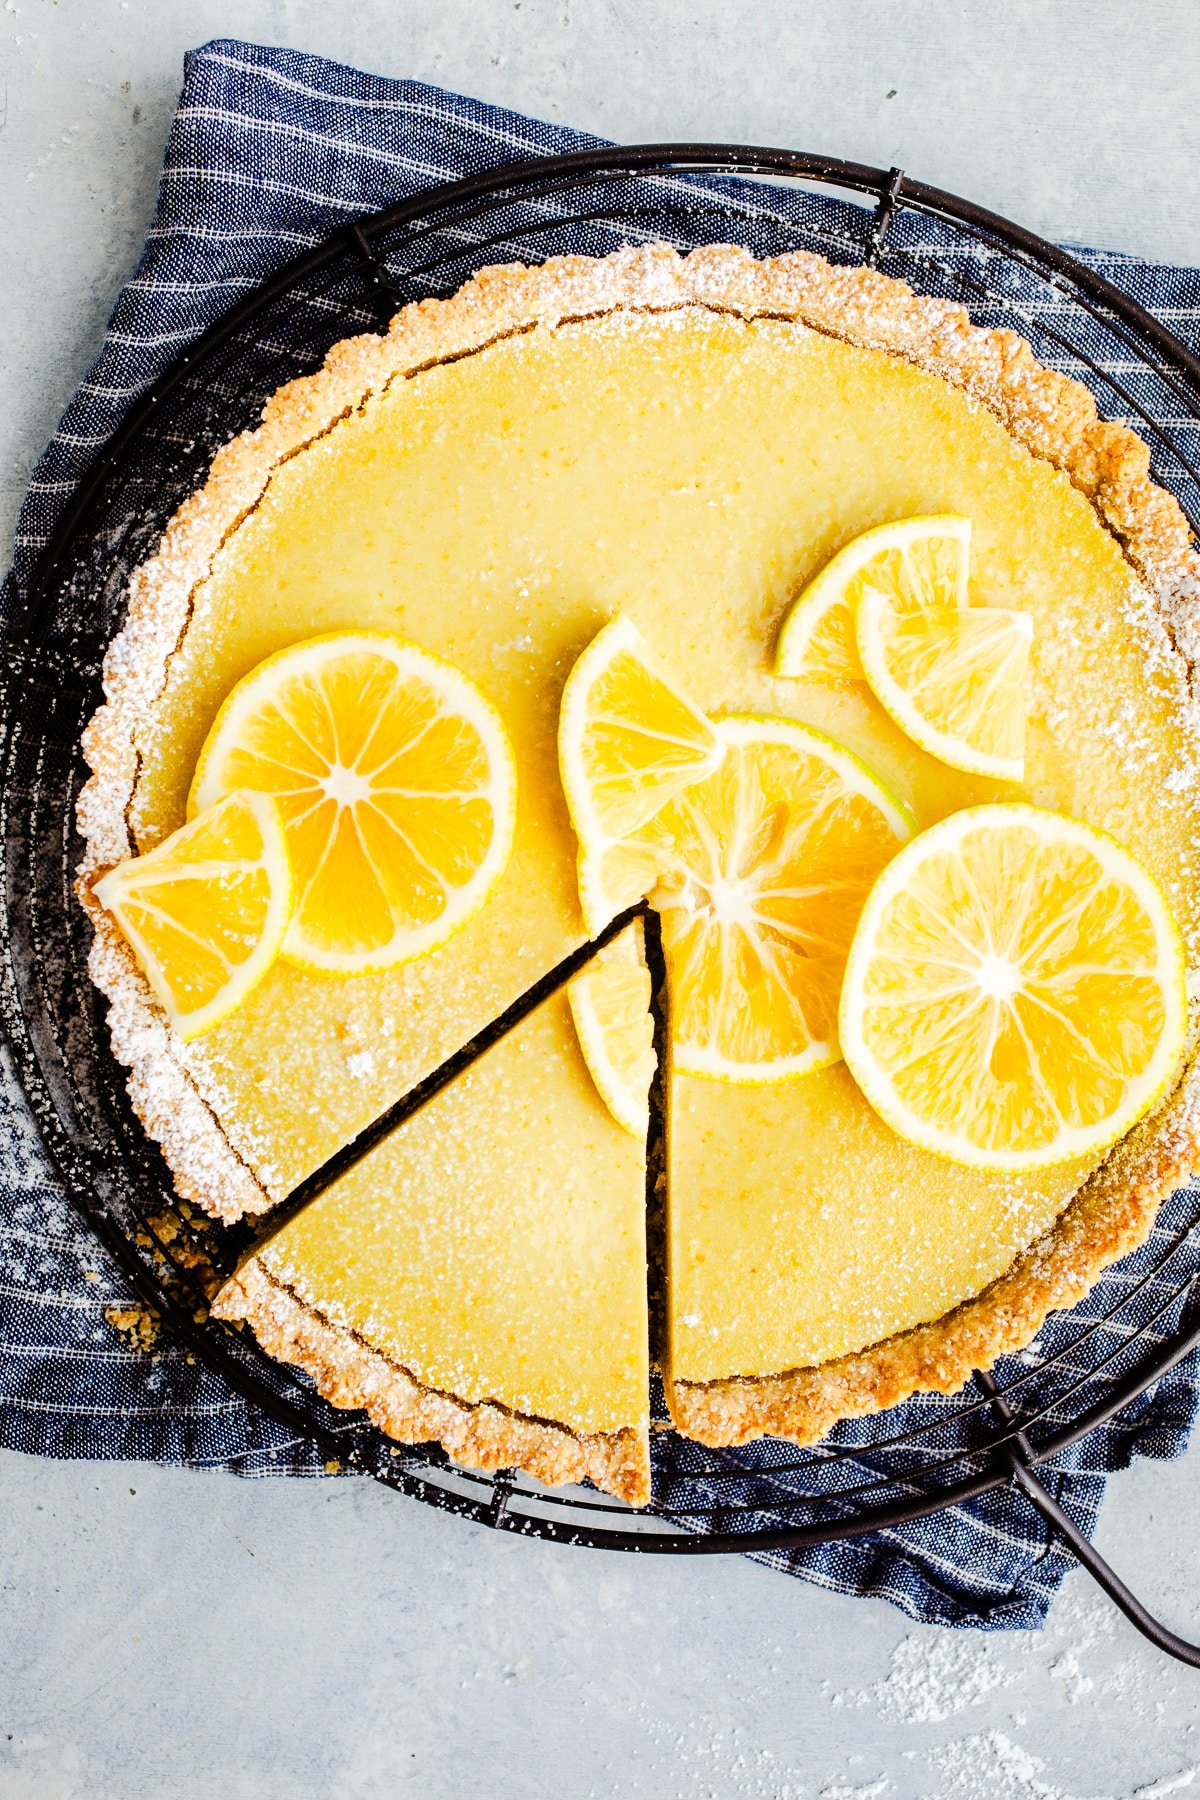 A lemon tart topped with lemon slices.